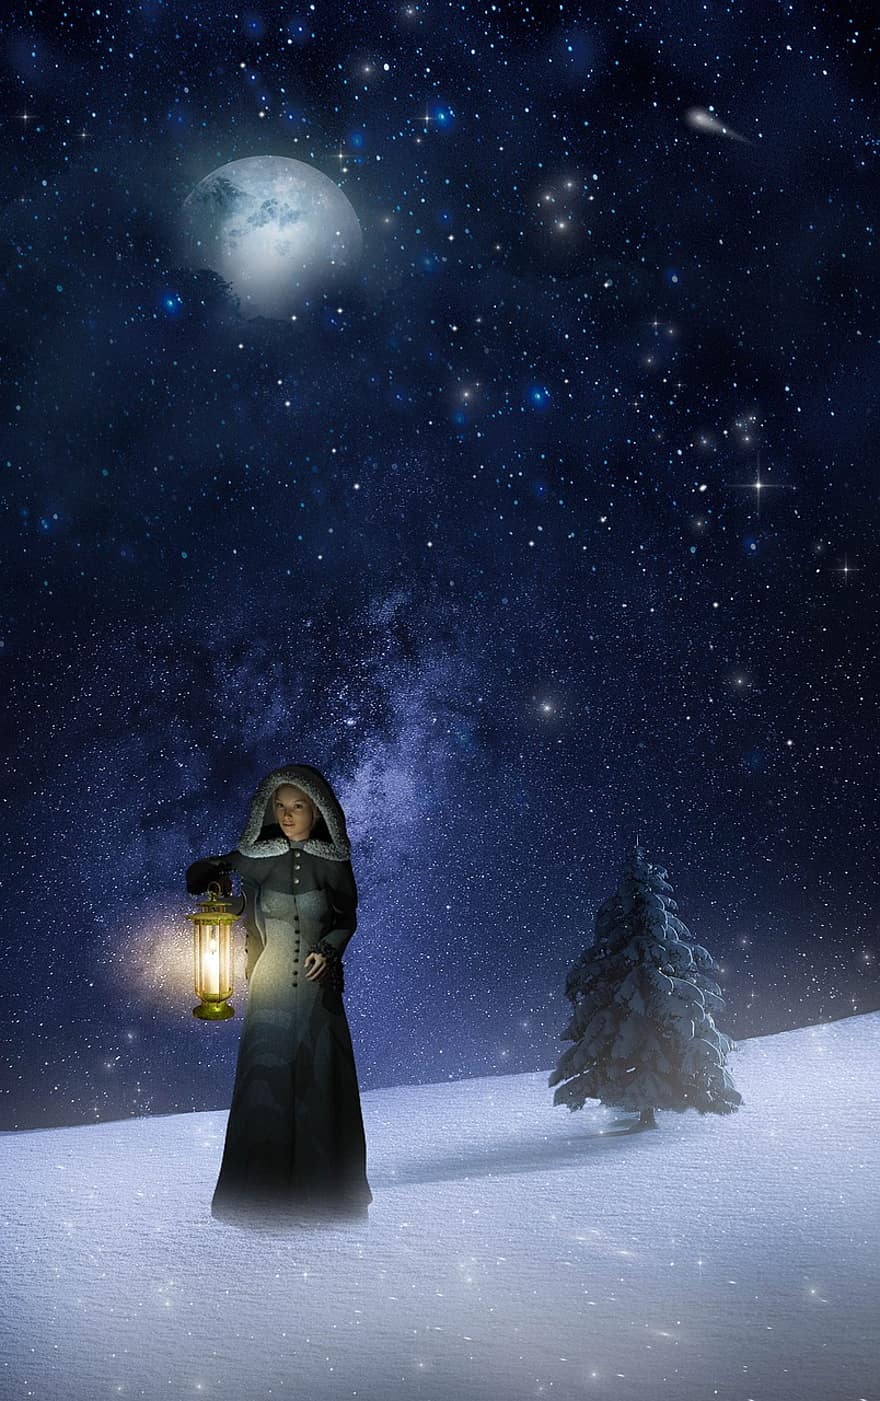 đàn bà, đèn lồng, tuyết, mặt trăng, hình đại diện, giống cái, Hình đại diện nữ, ánh trăng, các ngôi sao, cây, cây giáng sinh